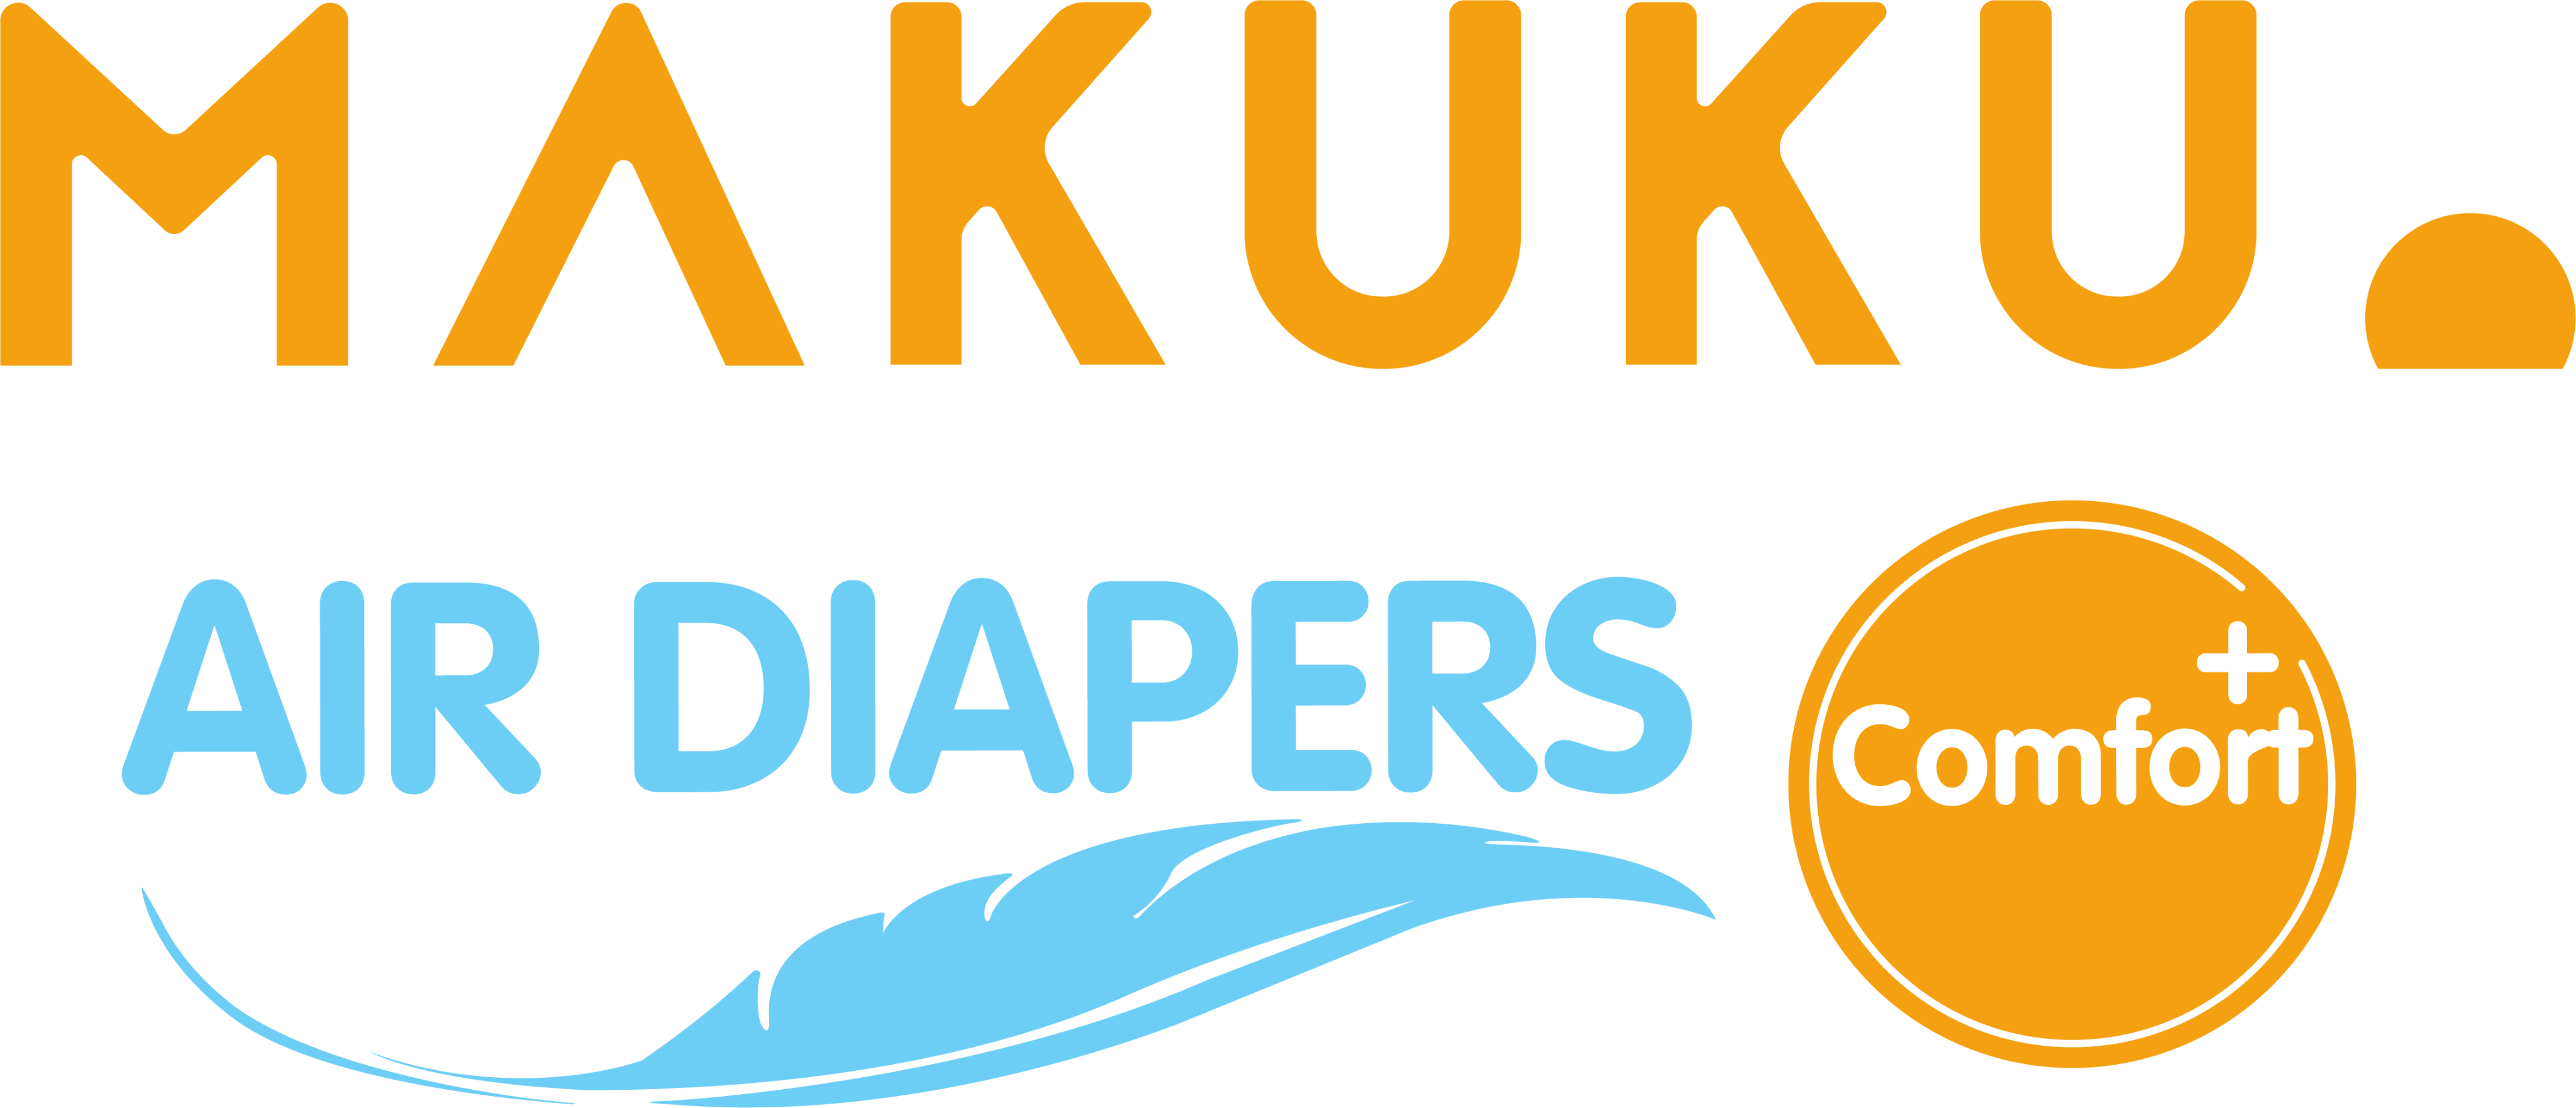 Logo Makuku Air Diapers Comfort 